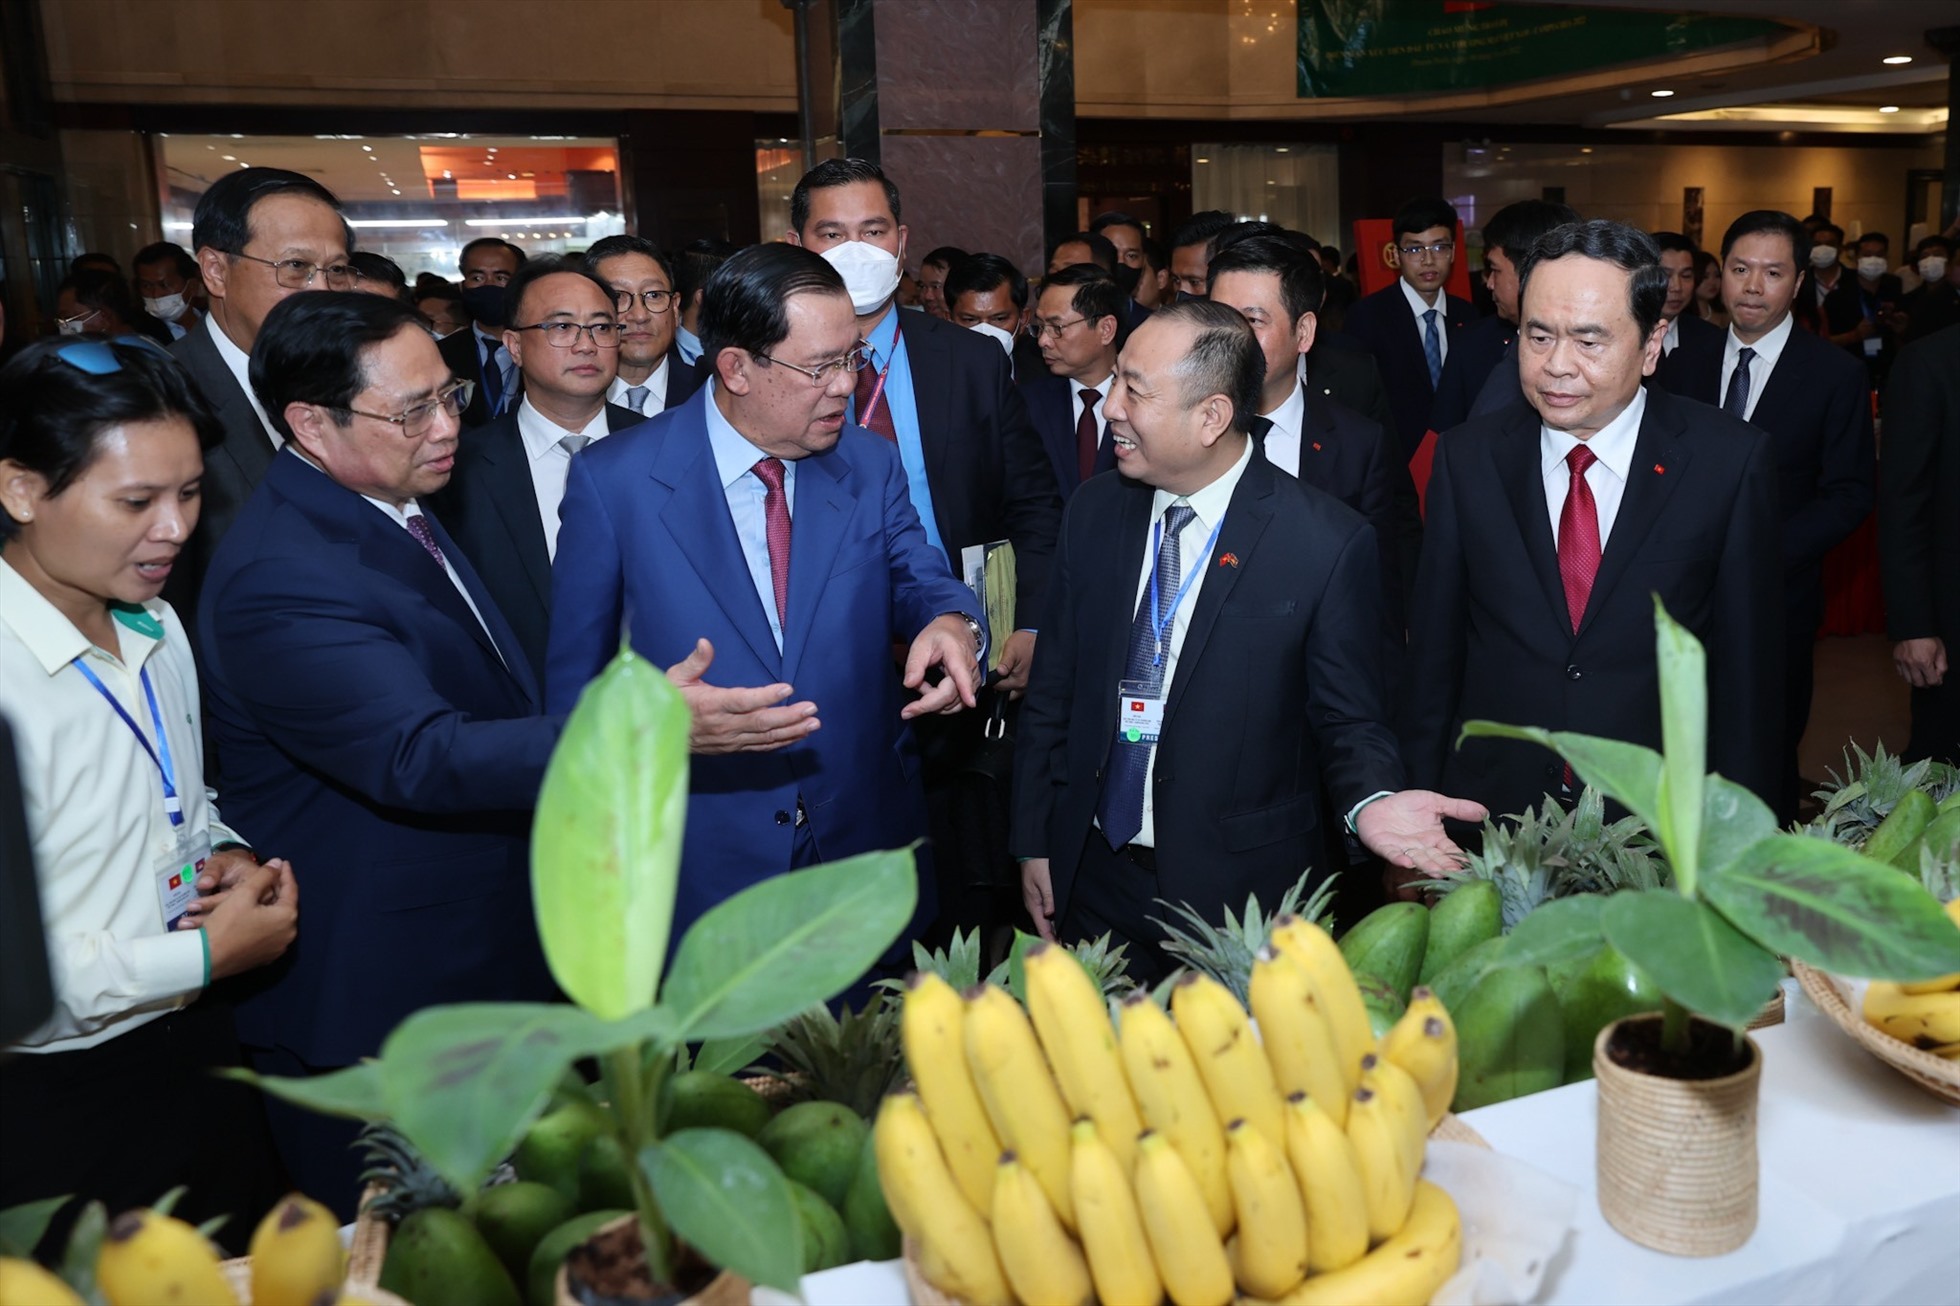 Thủ tướng Chính phủ Phạm Minh Chính cùng Thủ tướng Vương quốc Campuchia Samdech Techo Hun Sen tham quan gian hàng giới thiệu về sản phẩm nông nghiệp của THACO AGRICULTURE tại Campuchia